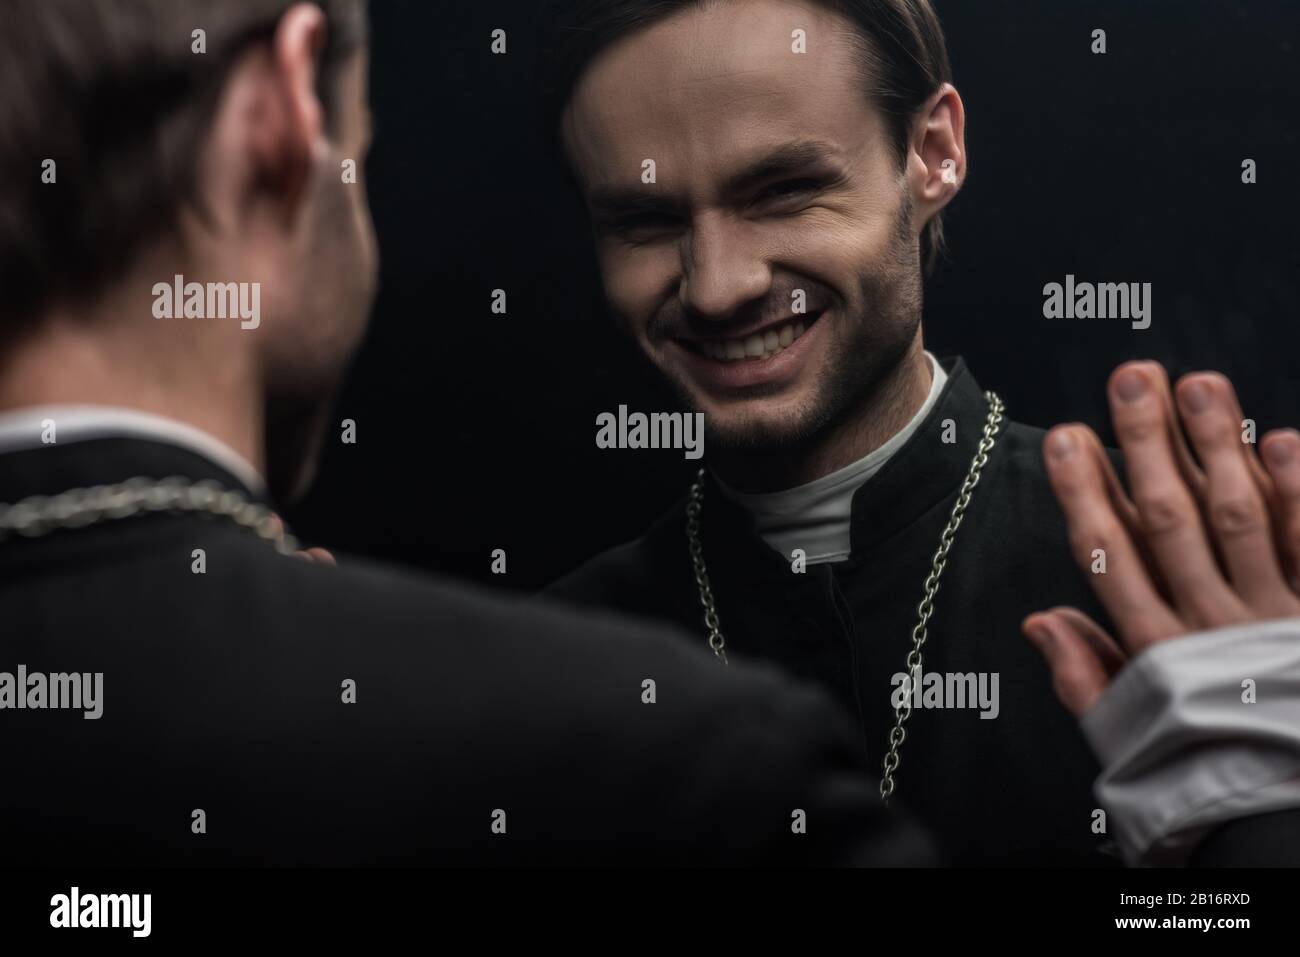 Der junge katholische Priester lacht sarkastisch, während er seine eigene Reflexion betrachtet, die auf Schwarz isoliert ist Stockfoto